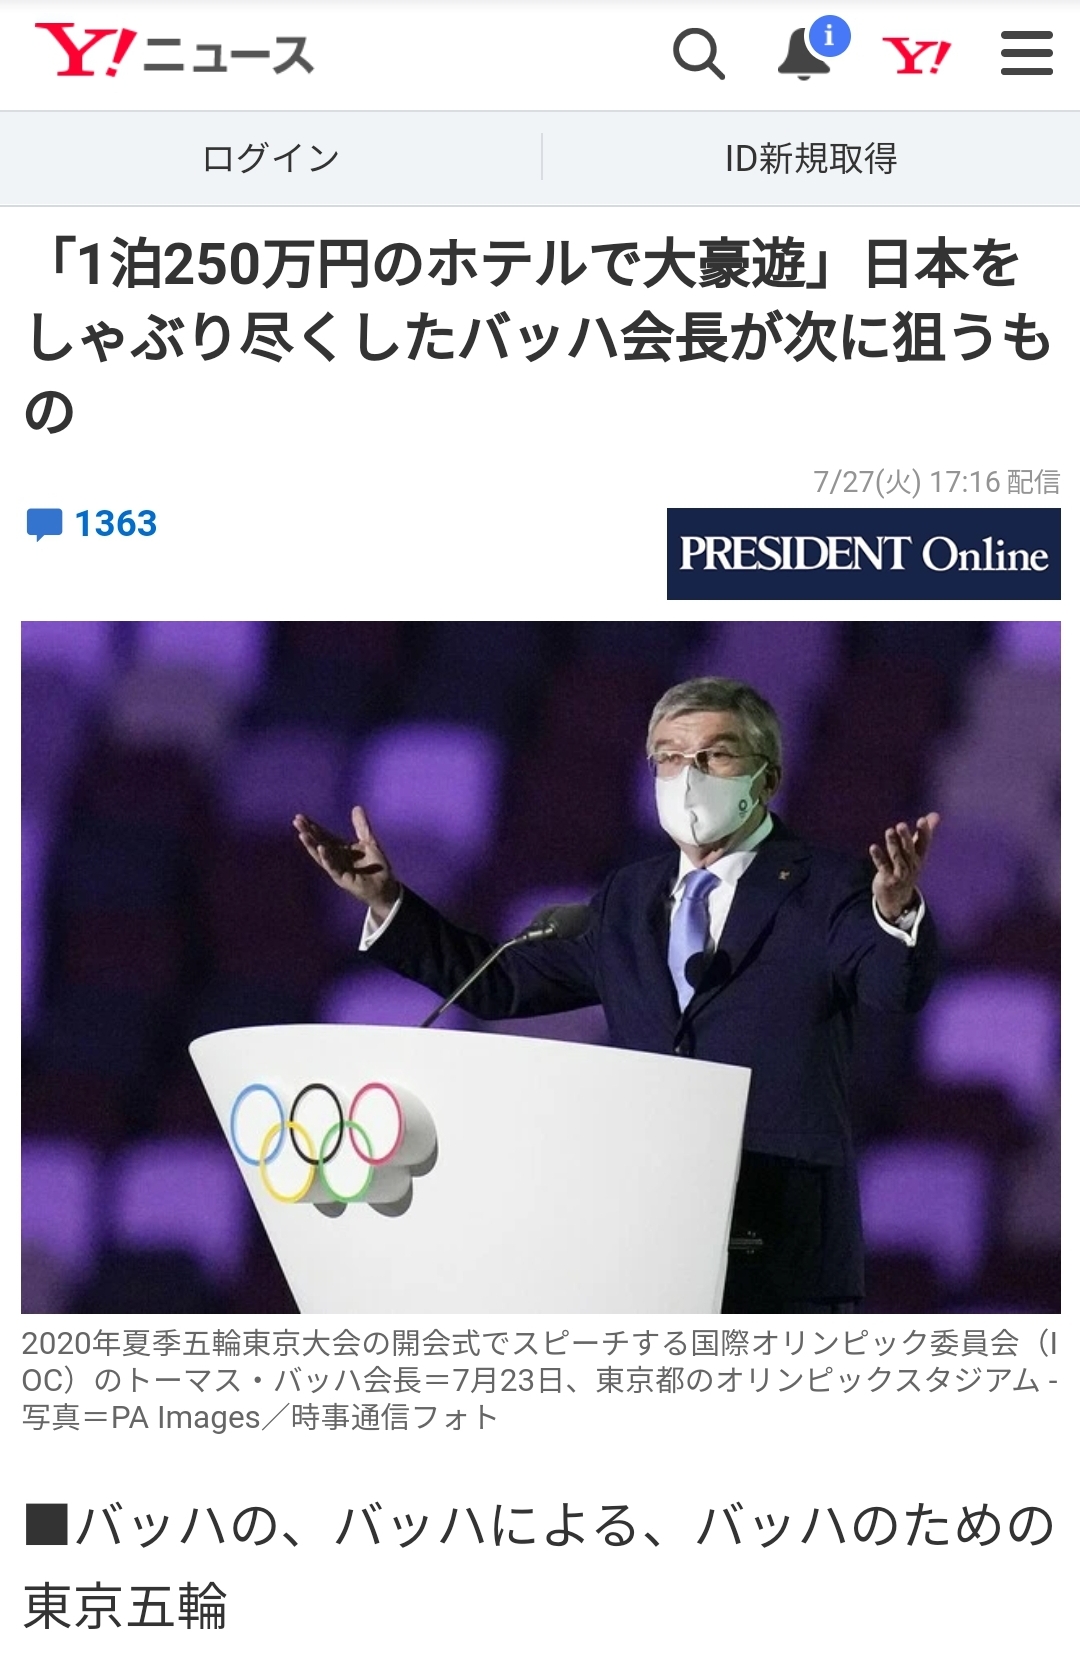 IOC 위원장 바흐가 즐기는 도쿄에서의 호화생활